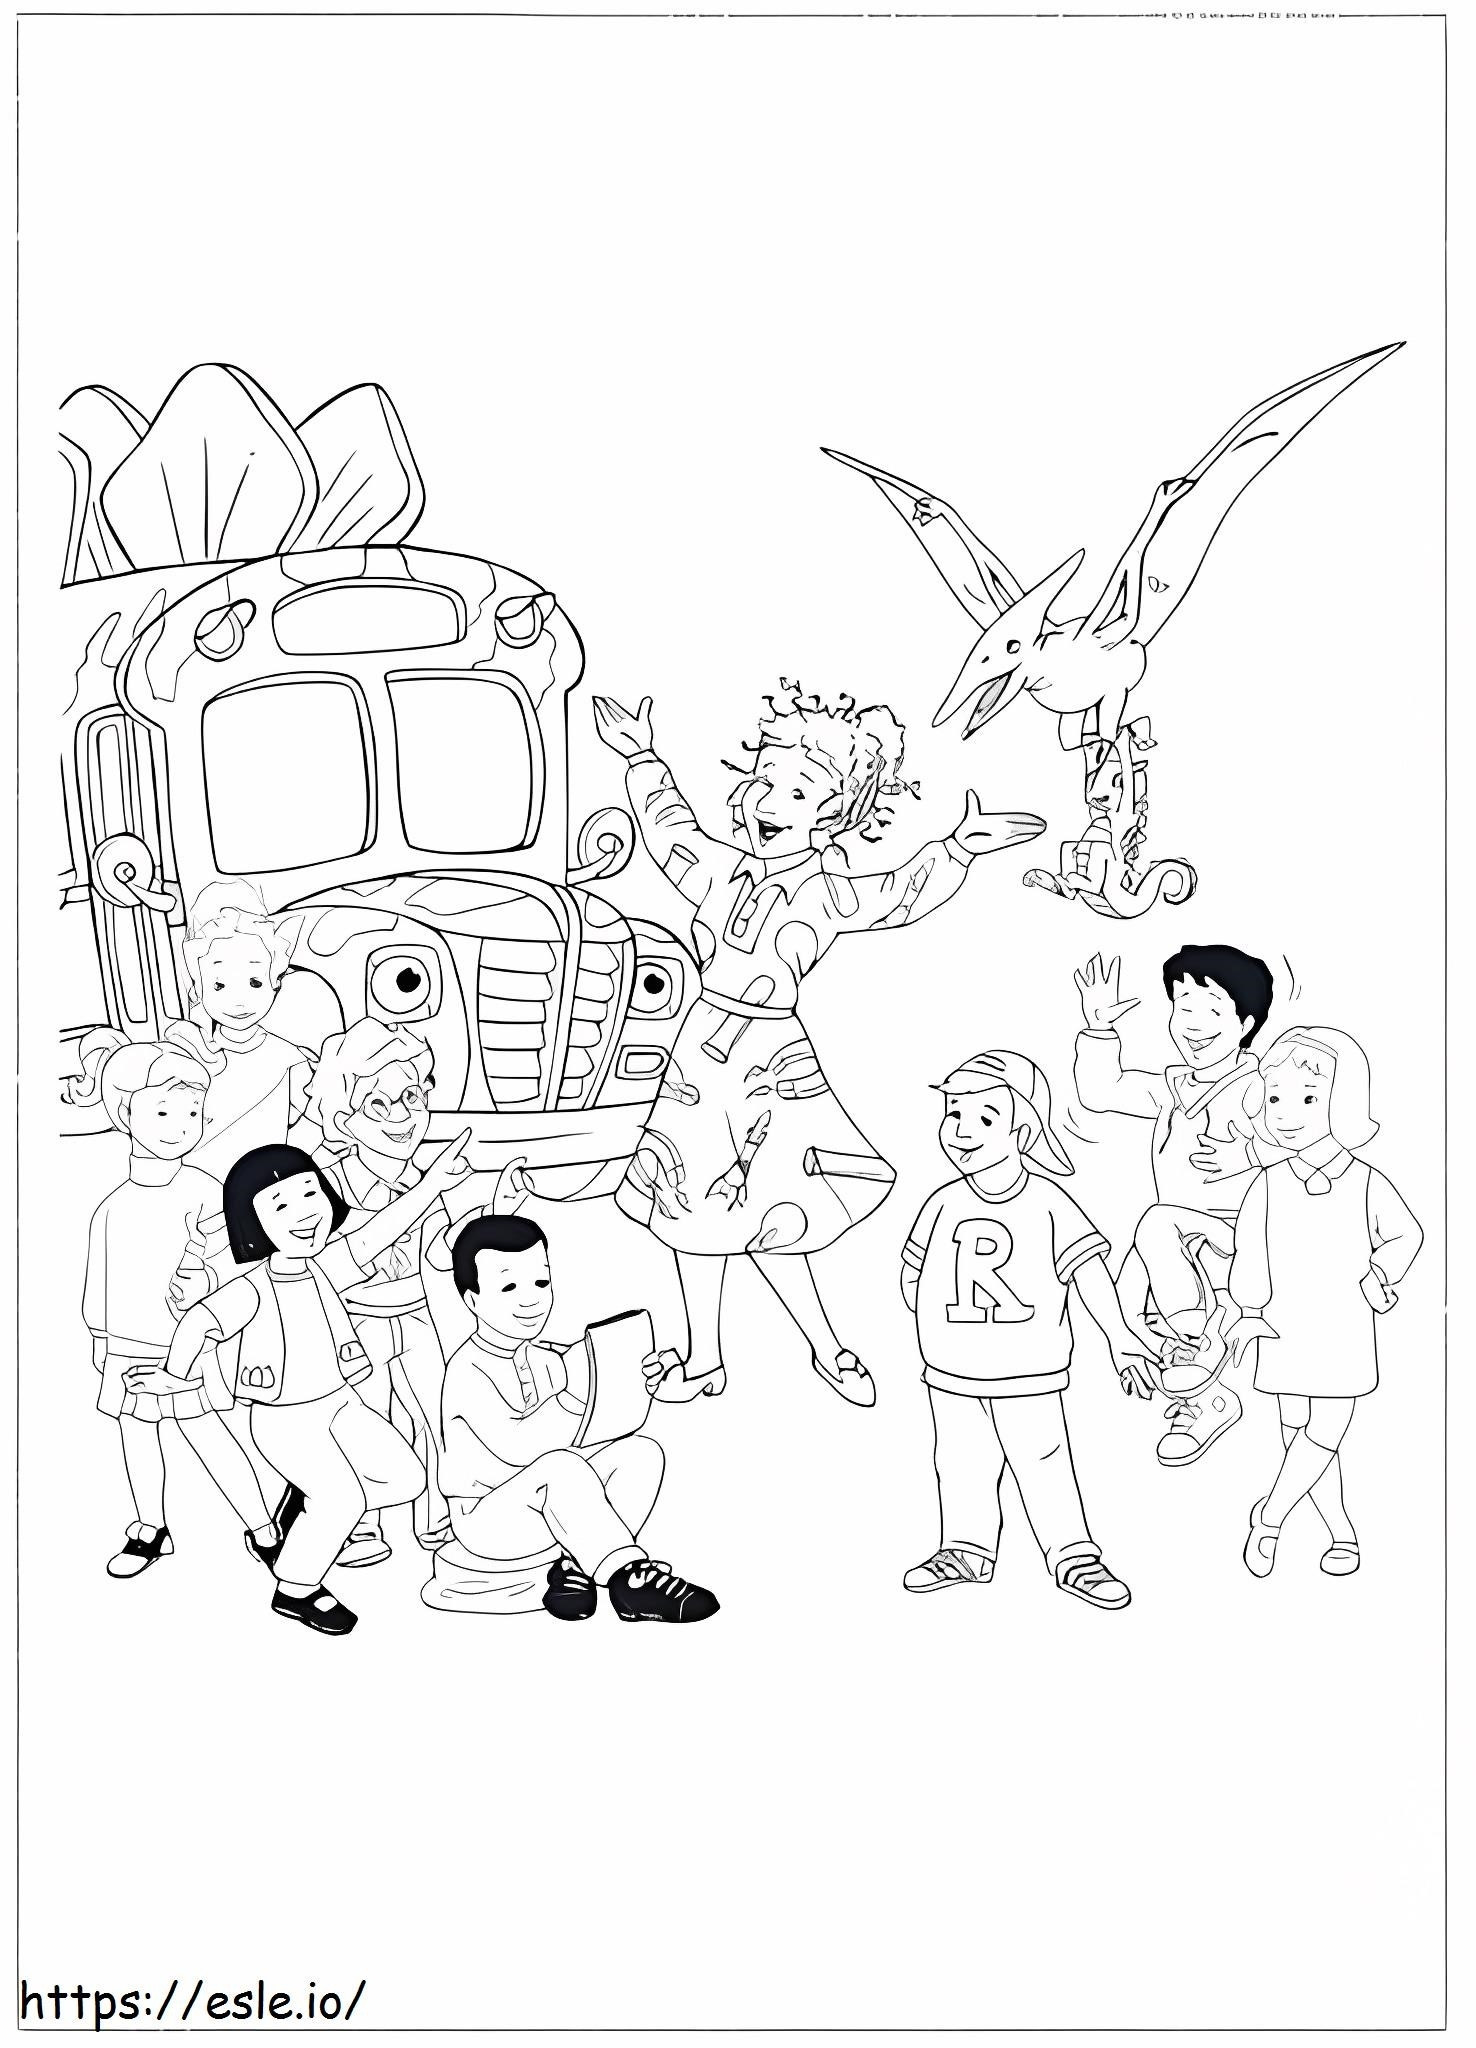 Magic School Bus 1 coloring page